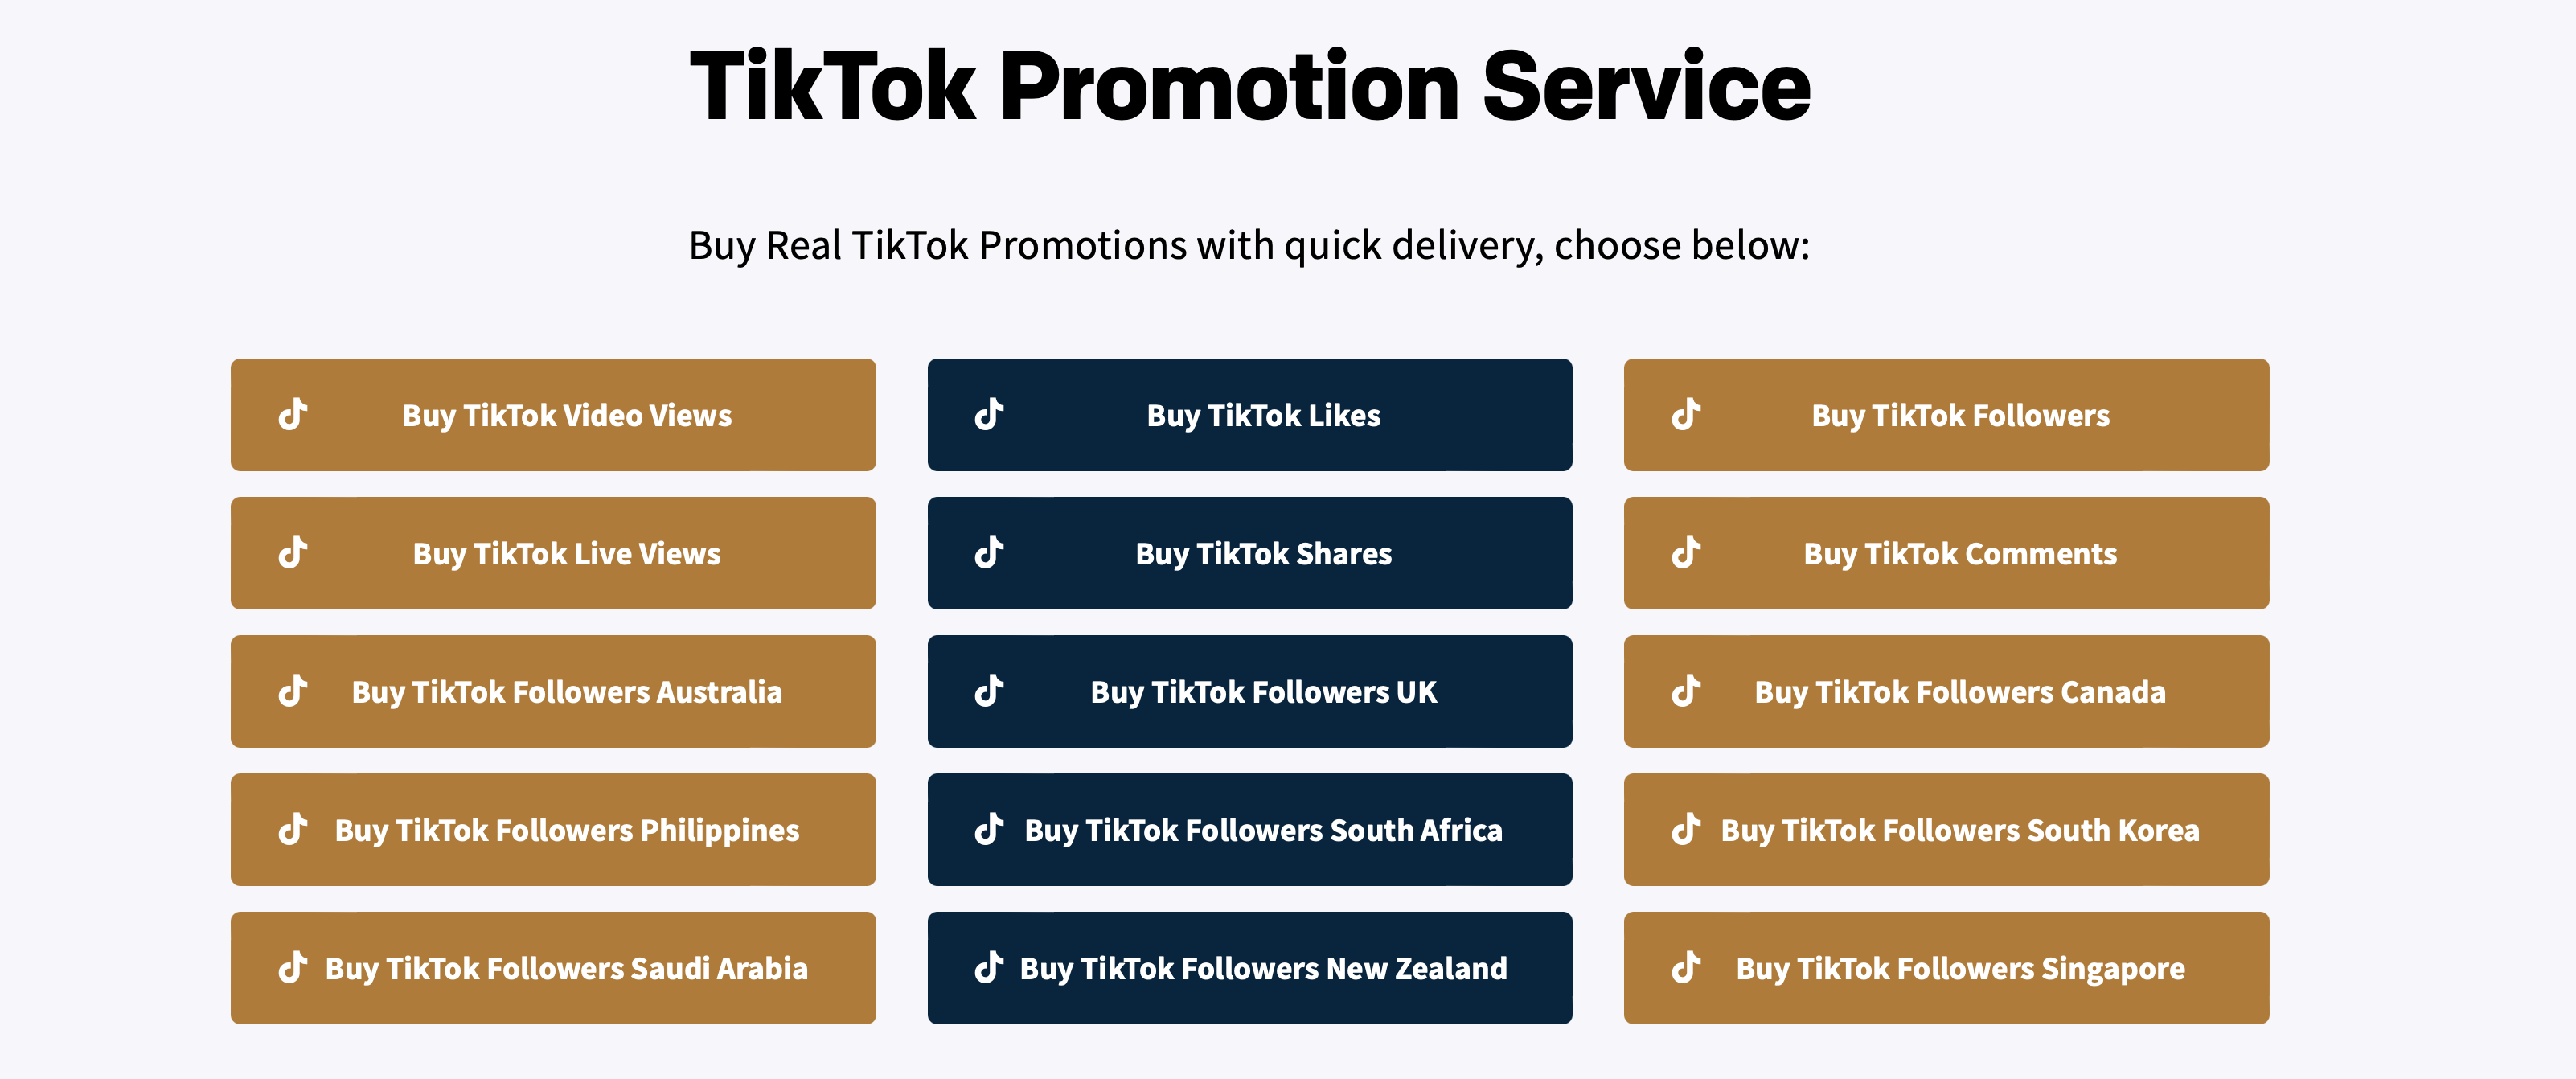 TikTok Promotion Service